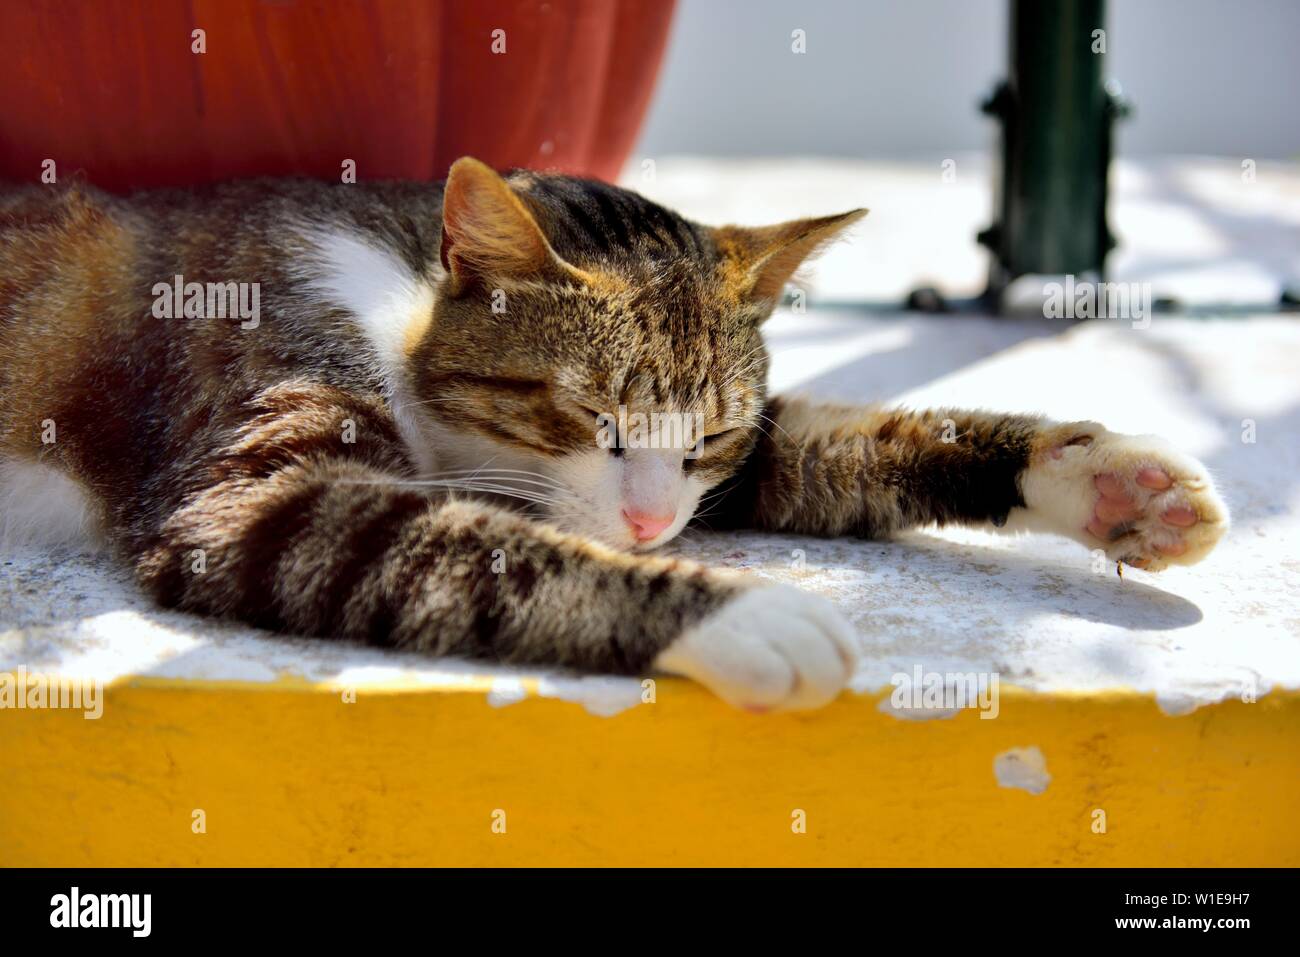 Tortoiseshell cat,Cat napping, in the sunshine,with eyes closed,hot sunny day,Theotokos Monastery, Monastery of Paleokastritsa, Corfu, Greece Stock Photo